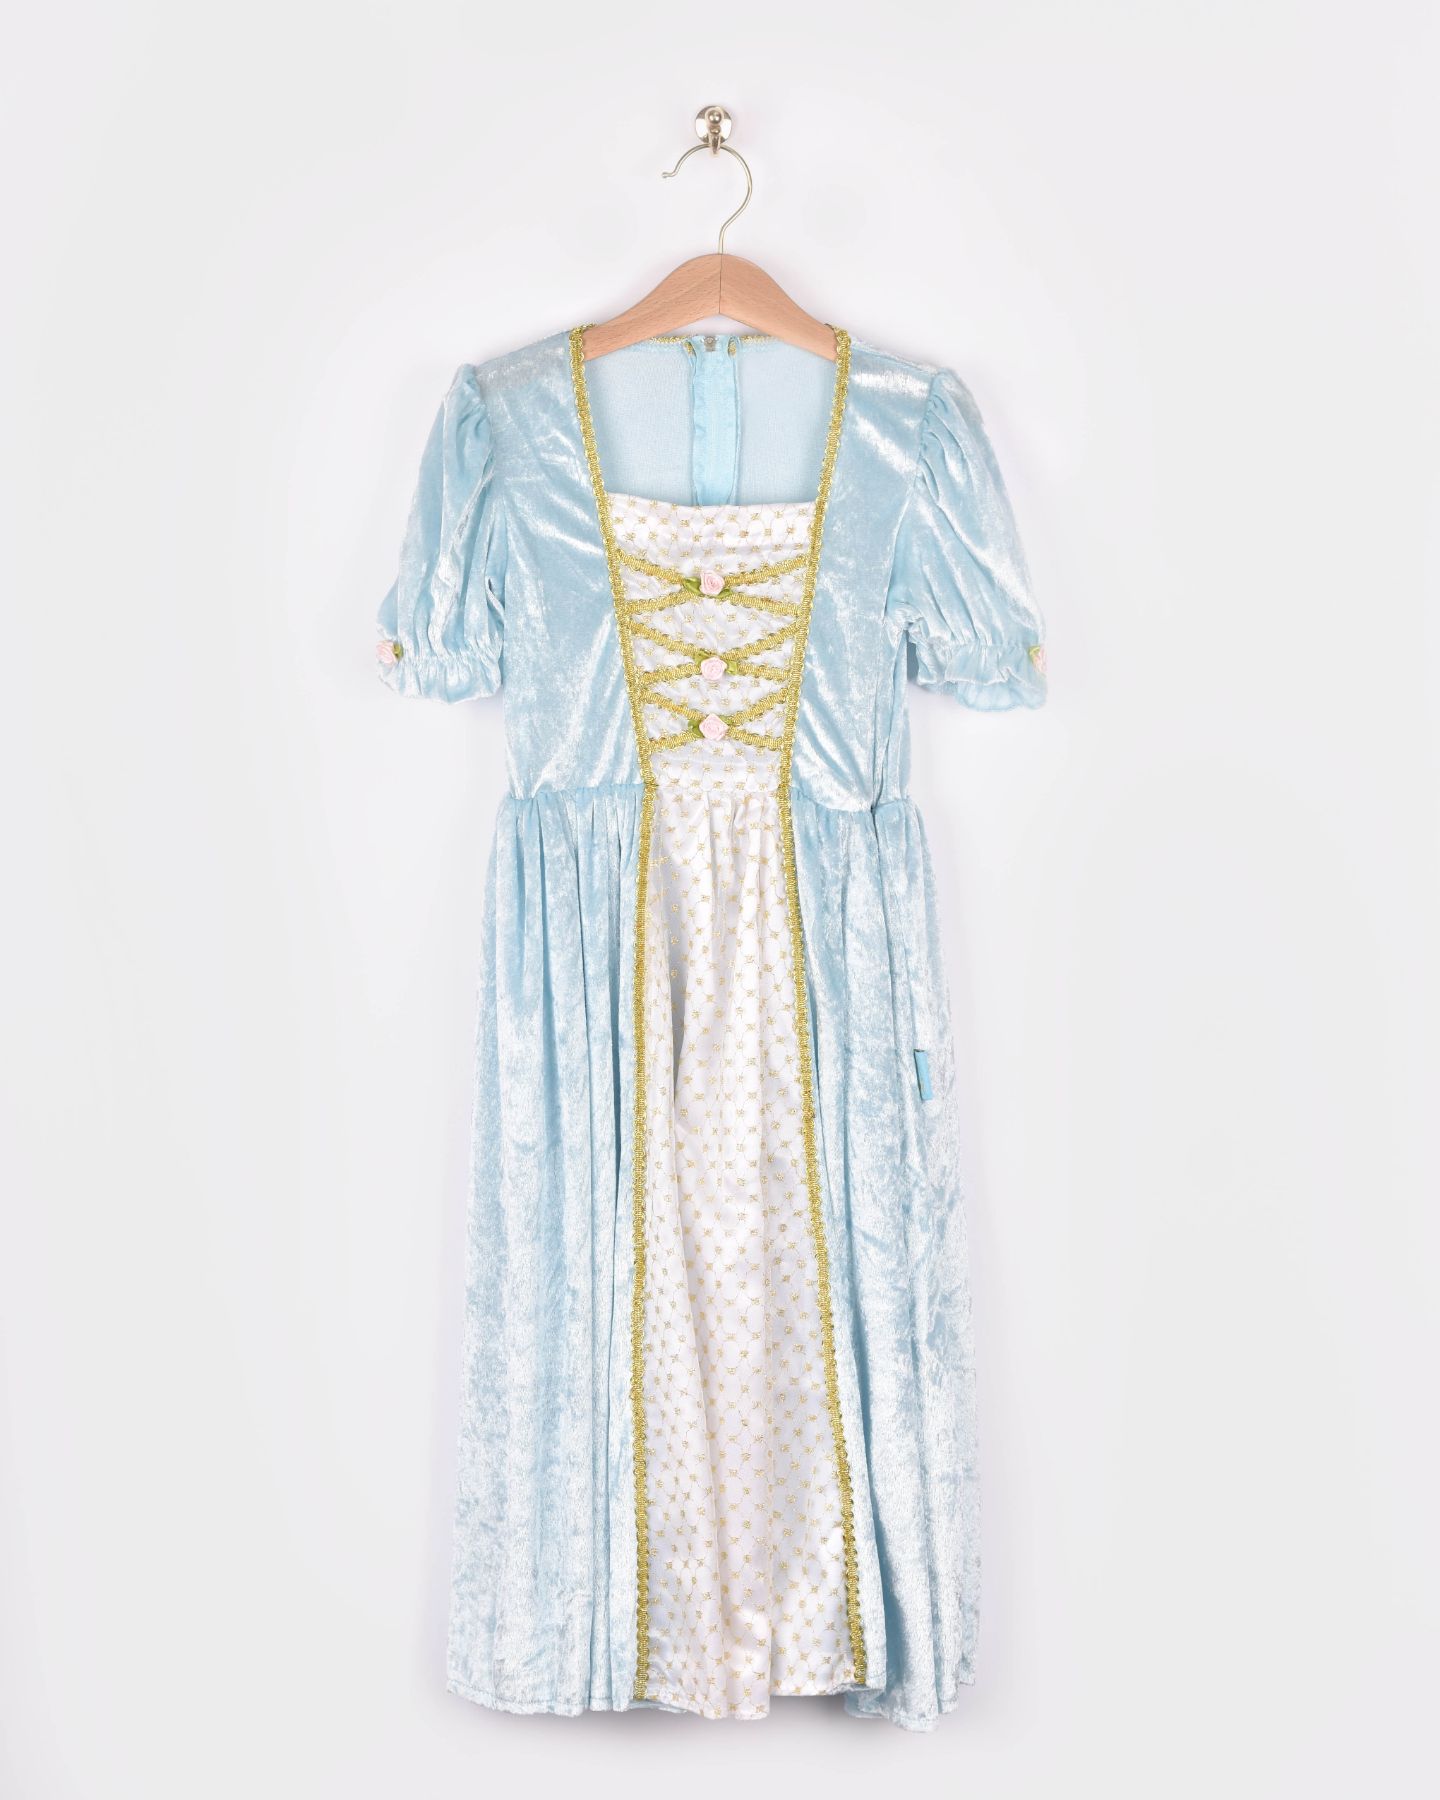 Ljusblå prinsessklänning på galge. Prinsessklänningen har ett vitt mittparti i satin, guldiga detaljer och rosa rosdekorationer.